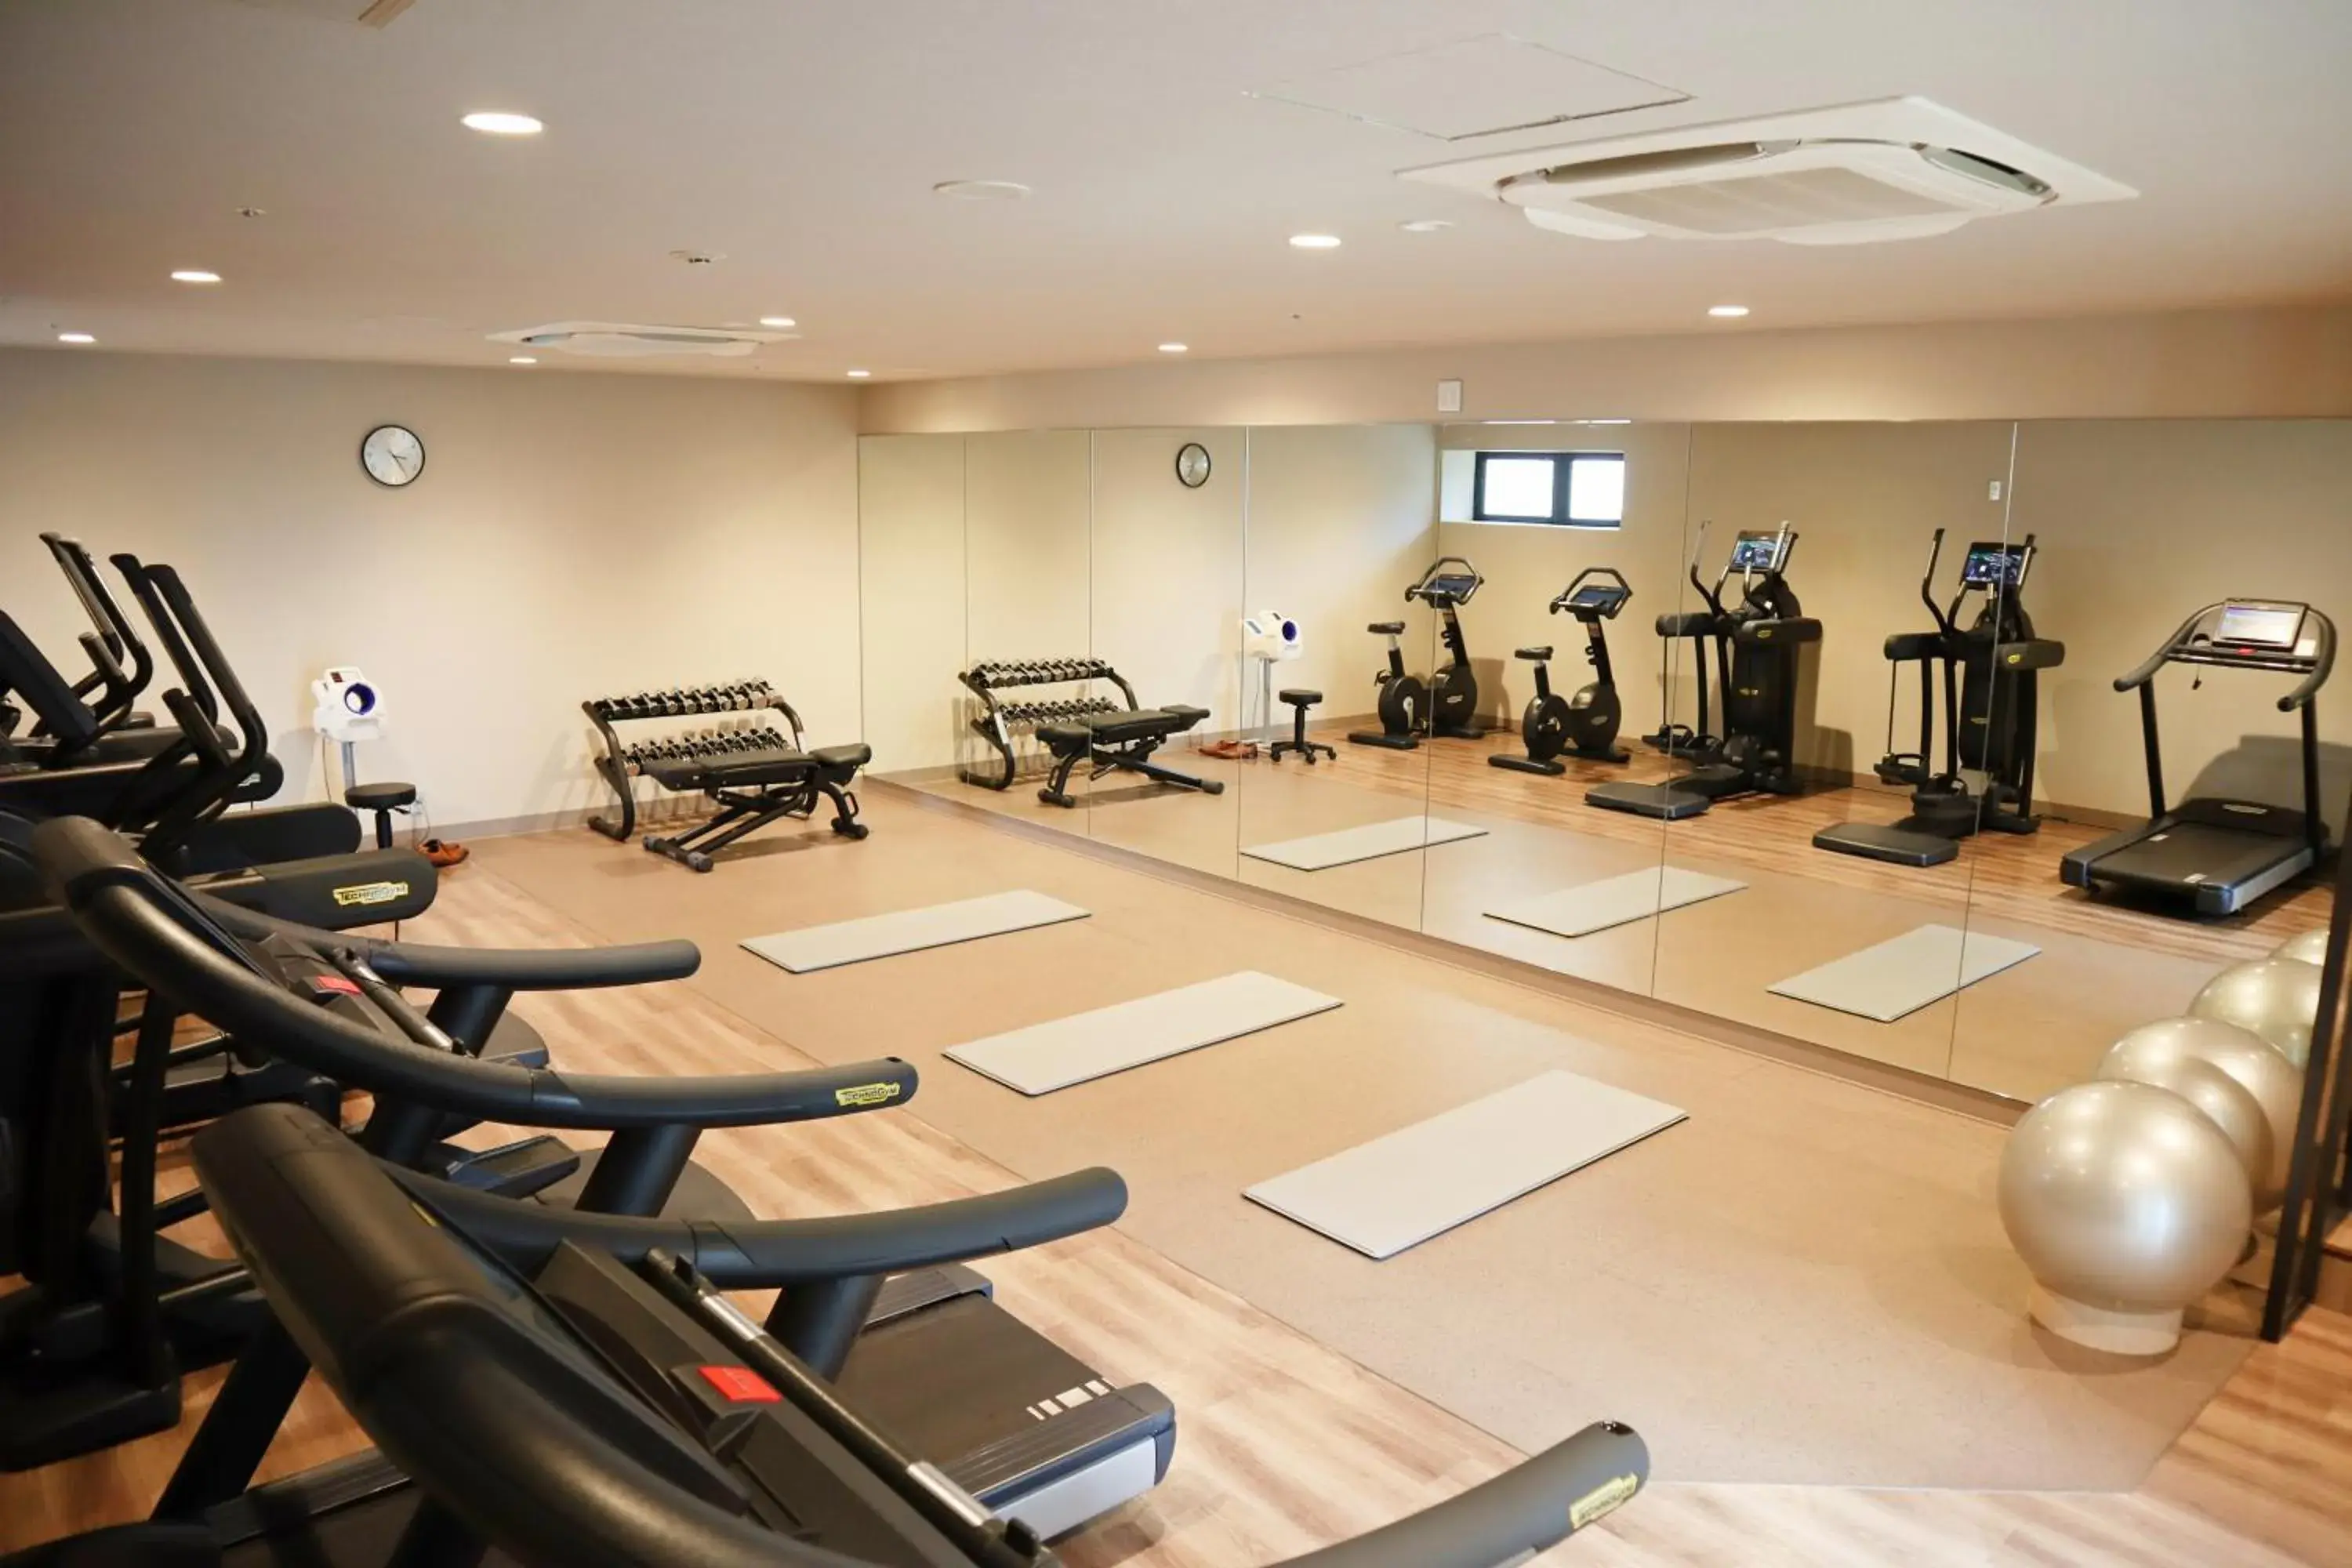 Fitness centre/facilities, Fitness Center/Facilities in Novotel Okinawa Naha